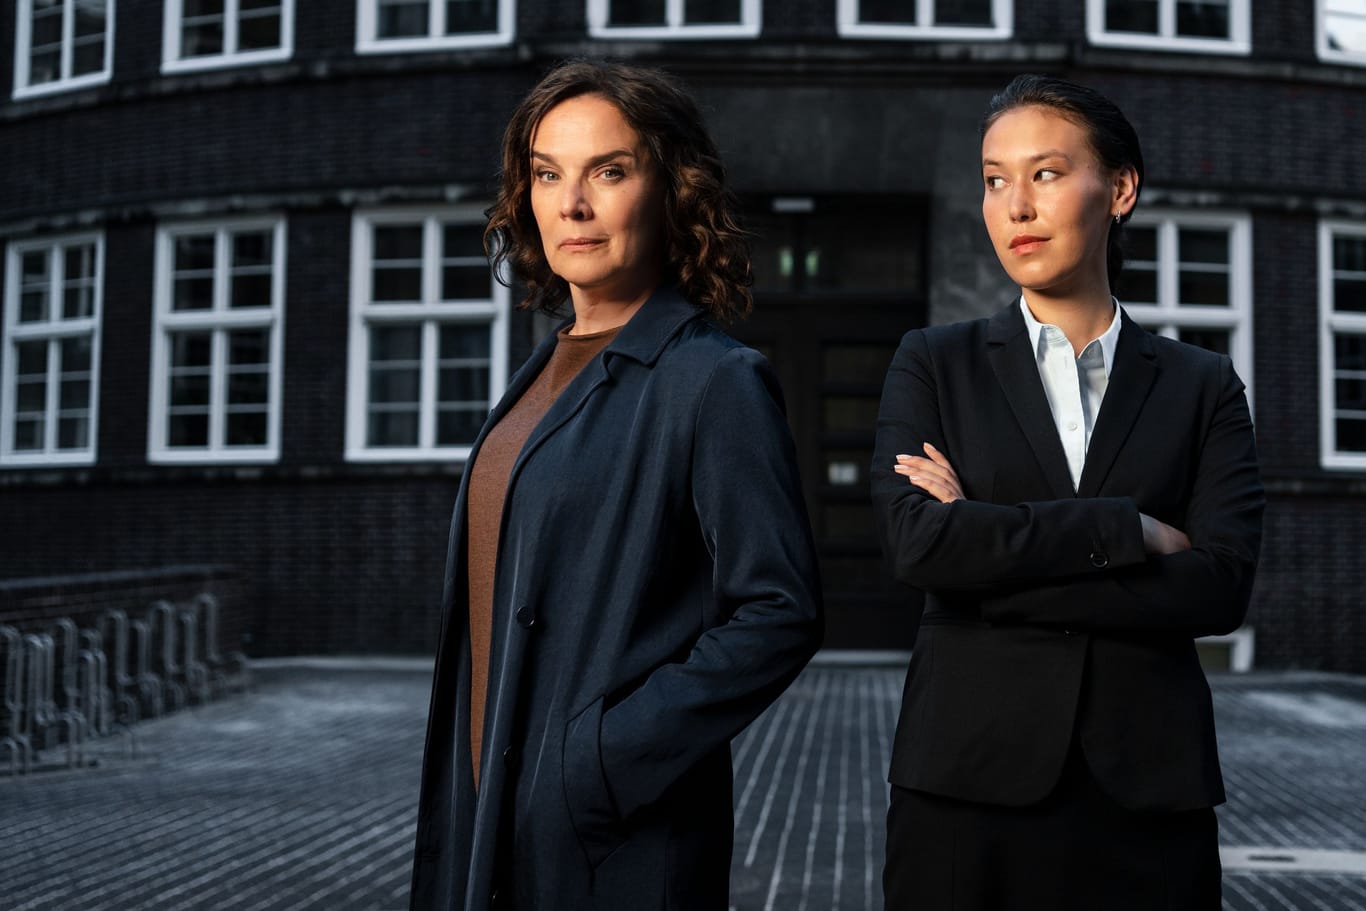 "Conti": Désirée Nosbusch und Malaya Stern Takeda stehen gemeinsam für die neue ZDF-Krimireihe vor der Kamera.